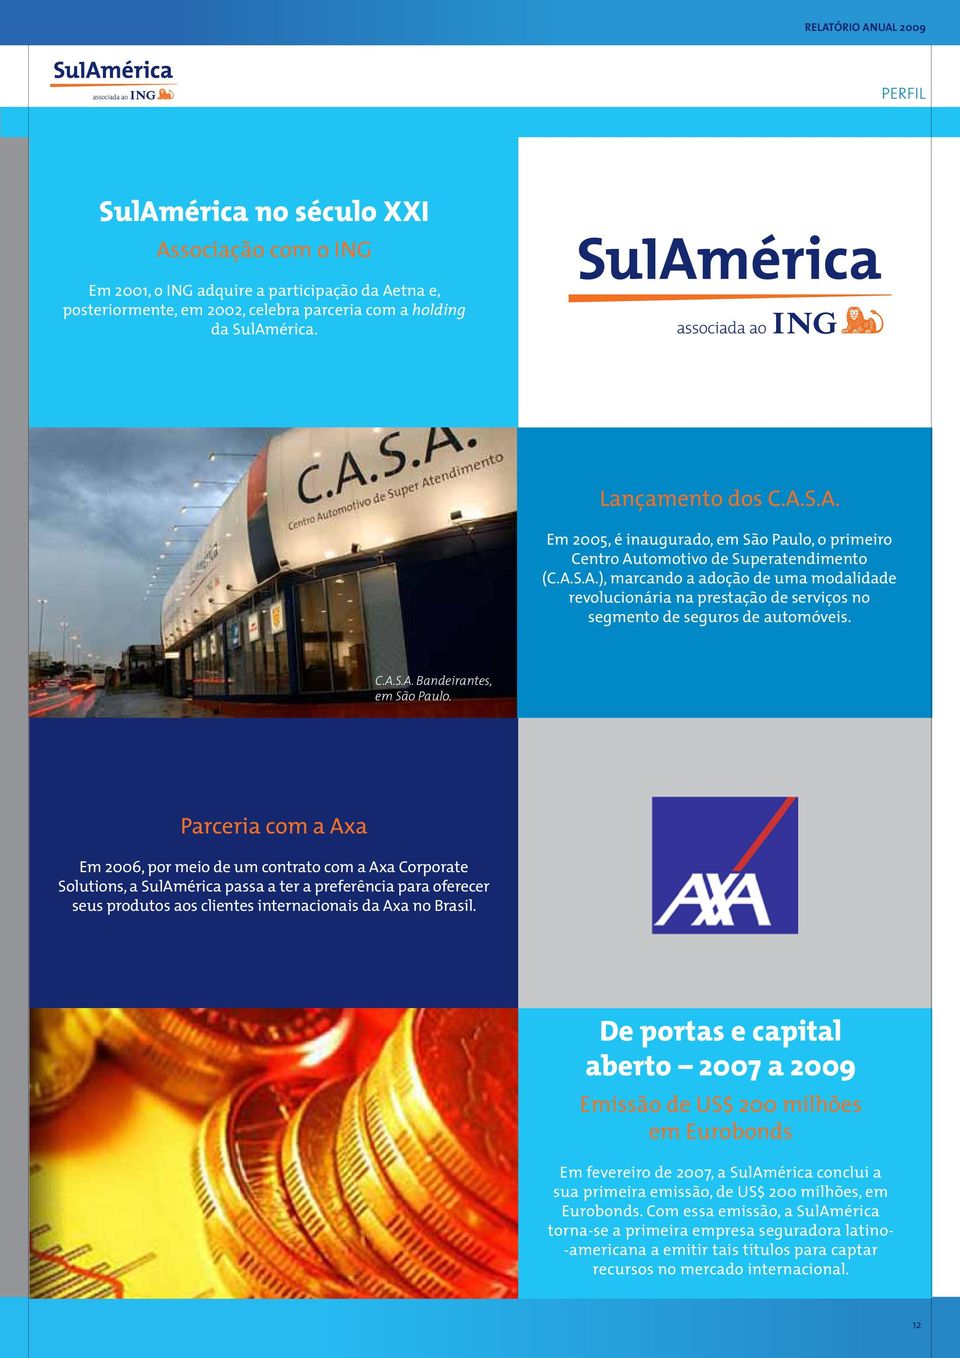 Parceria com a Axa Em 2006, por meio de um contrato com a Axa Corporate Solutions, a SulAmérica passa a ter a preferência para oferecer seus produtos aos clientes internacionais da Axa no Brasil.